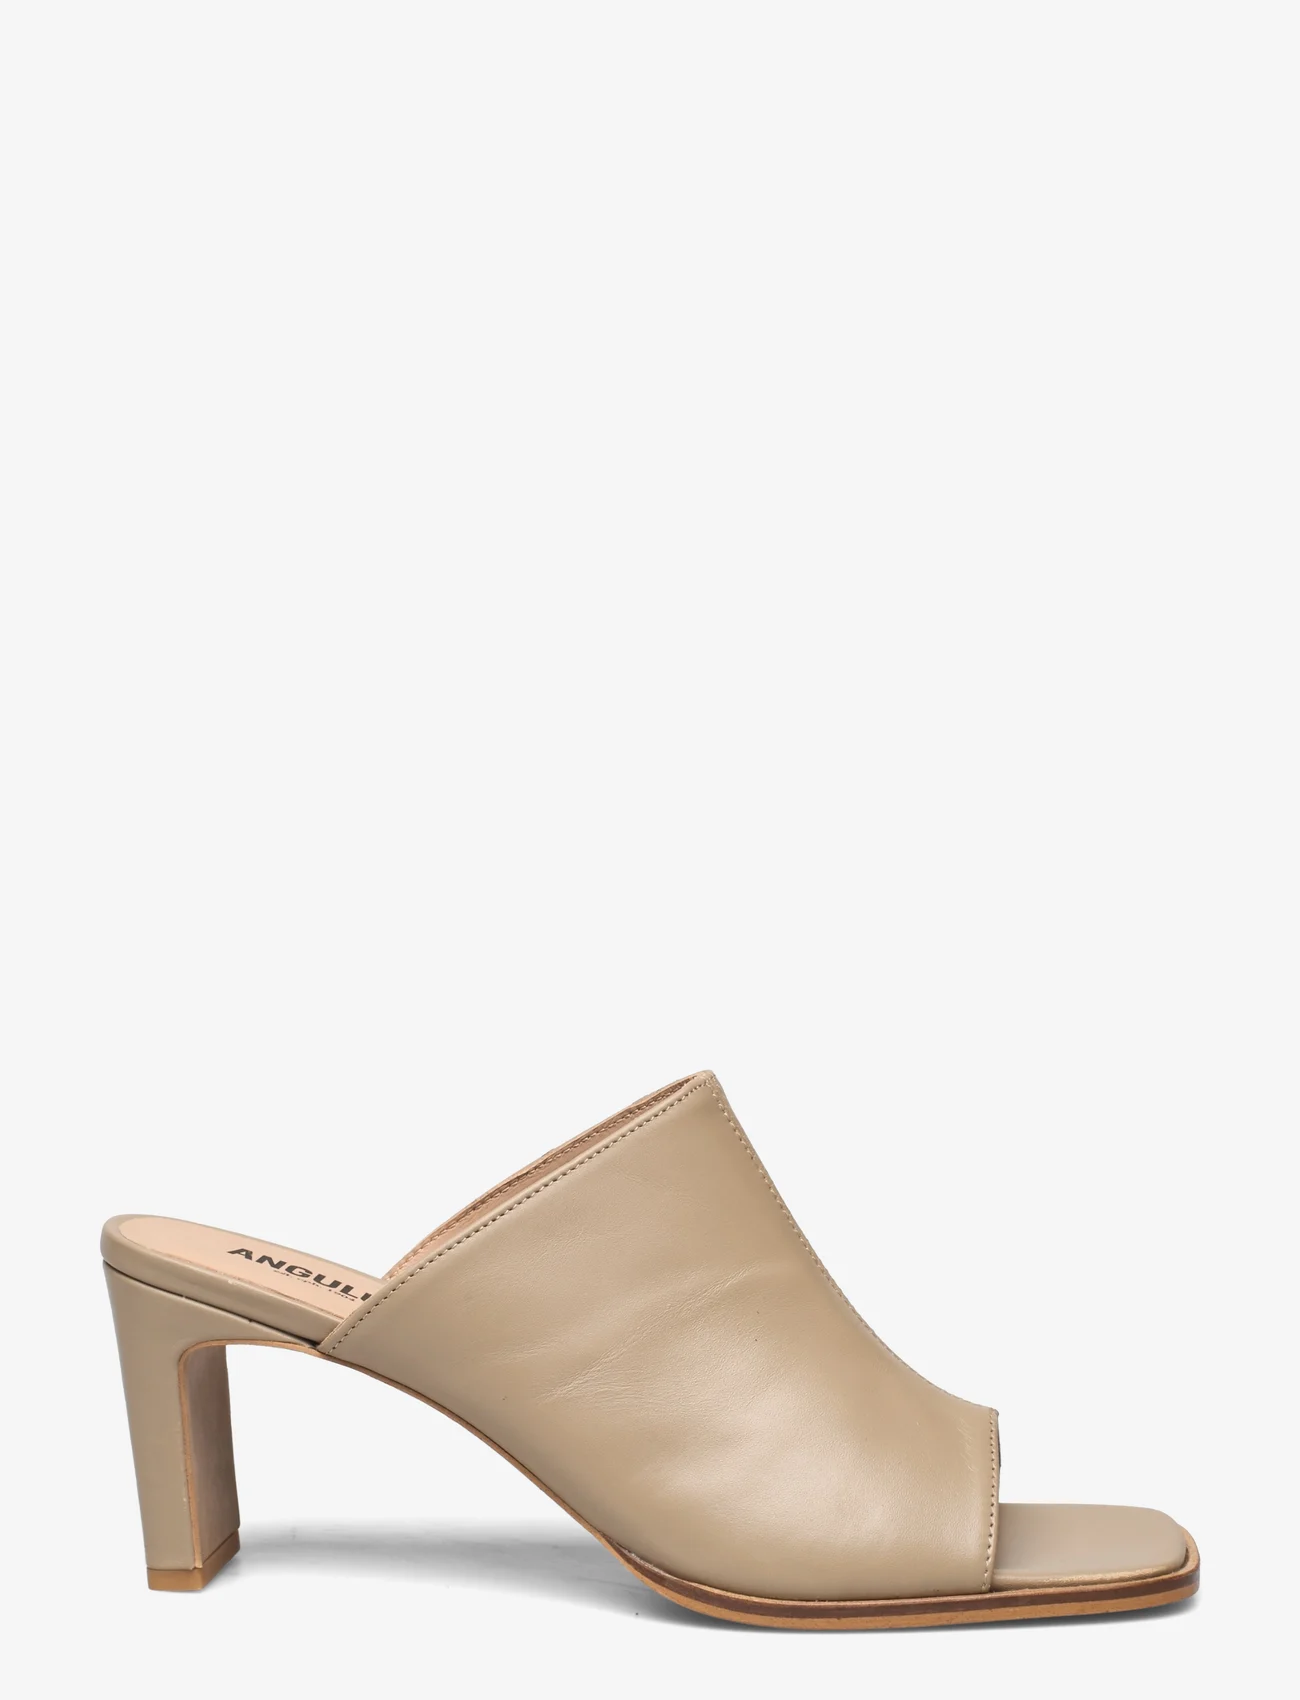 ANGULUS - Sandals - Block heels - mules med klack - 1571 beige - 1